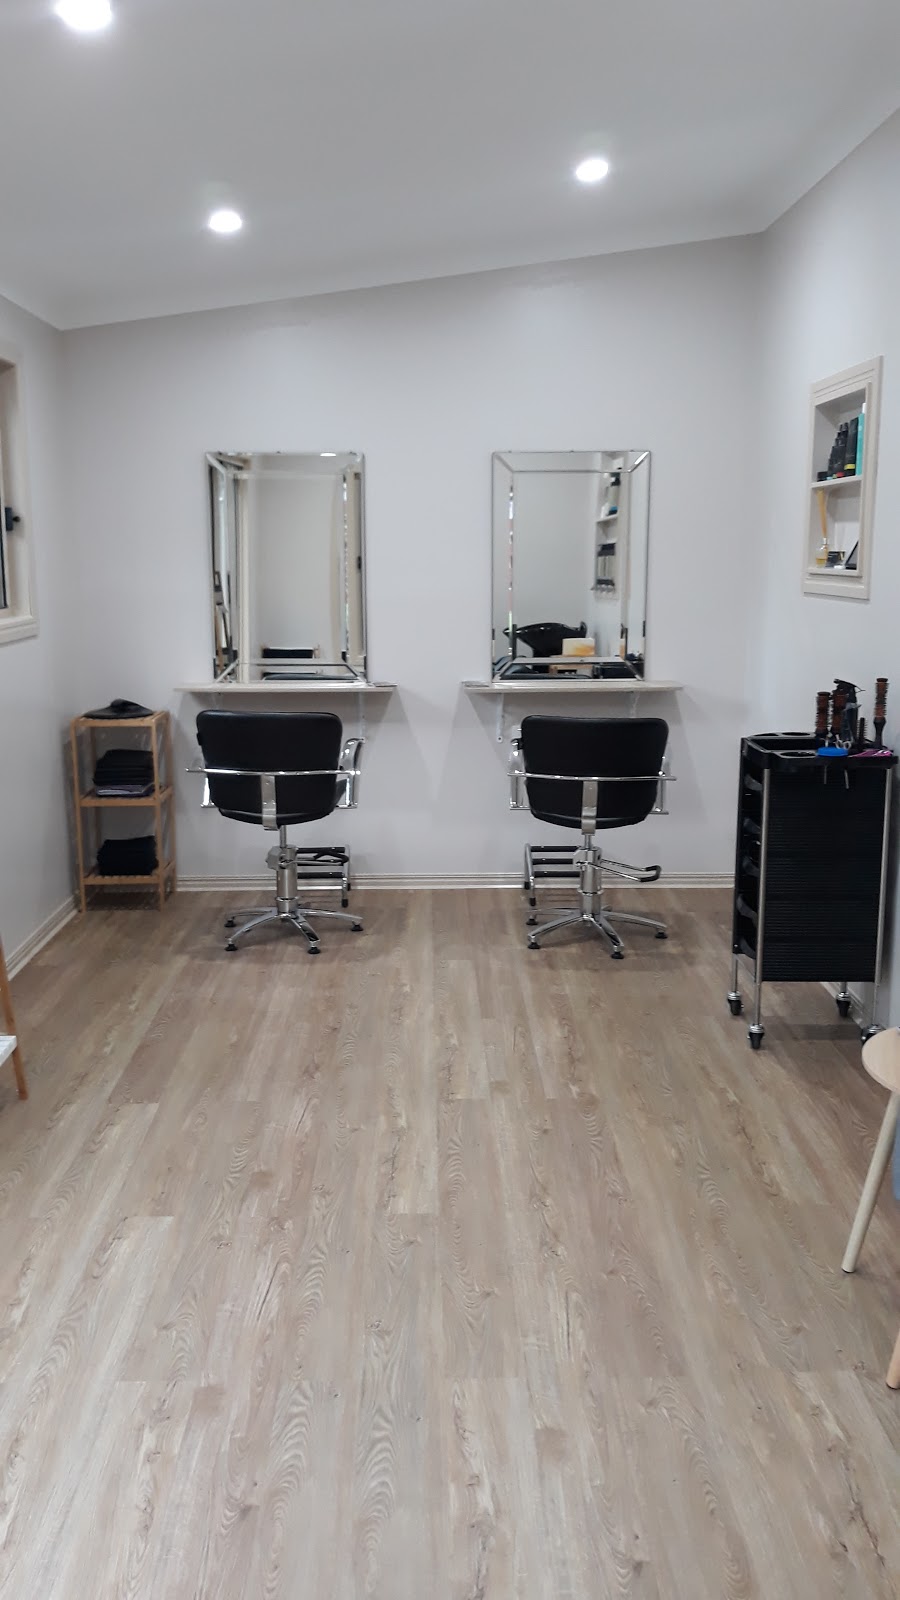 Sams natural hair studio | hair care | 59 Sea Eagles Rd, Booral QLD 4655, Australia | 0408295600 OR +61 408 295 600